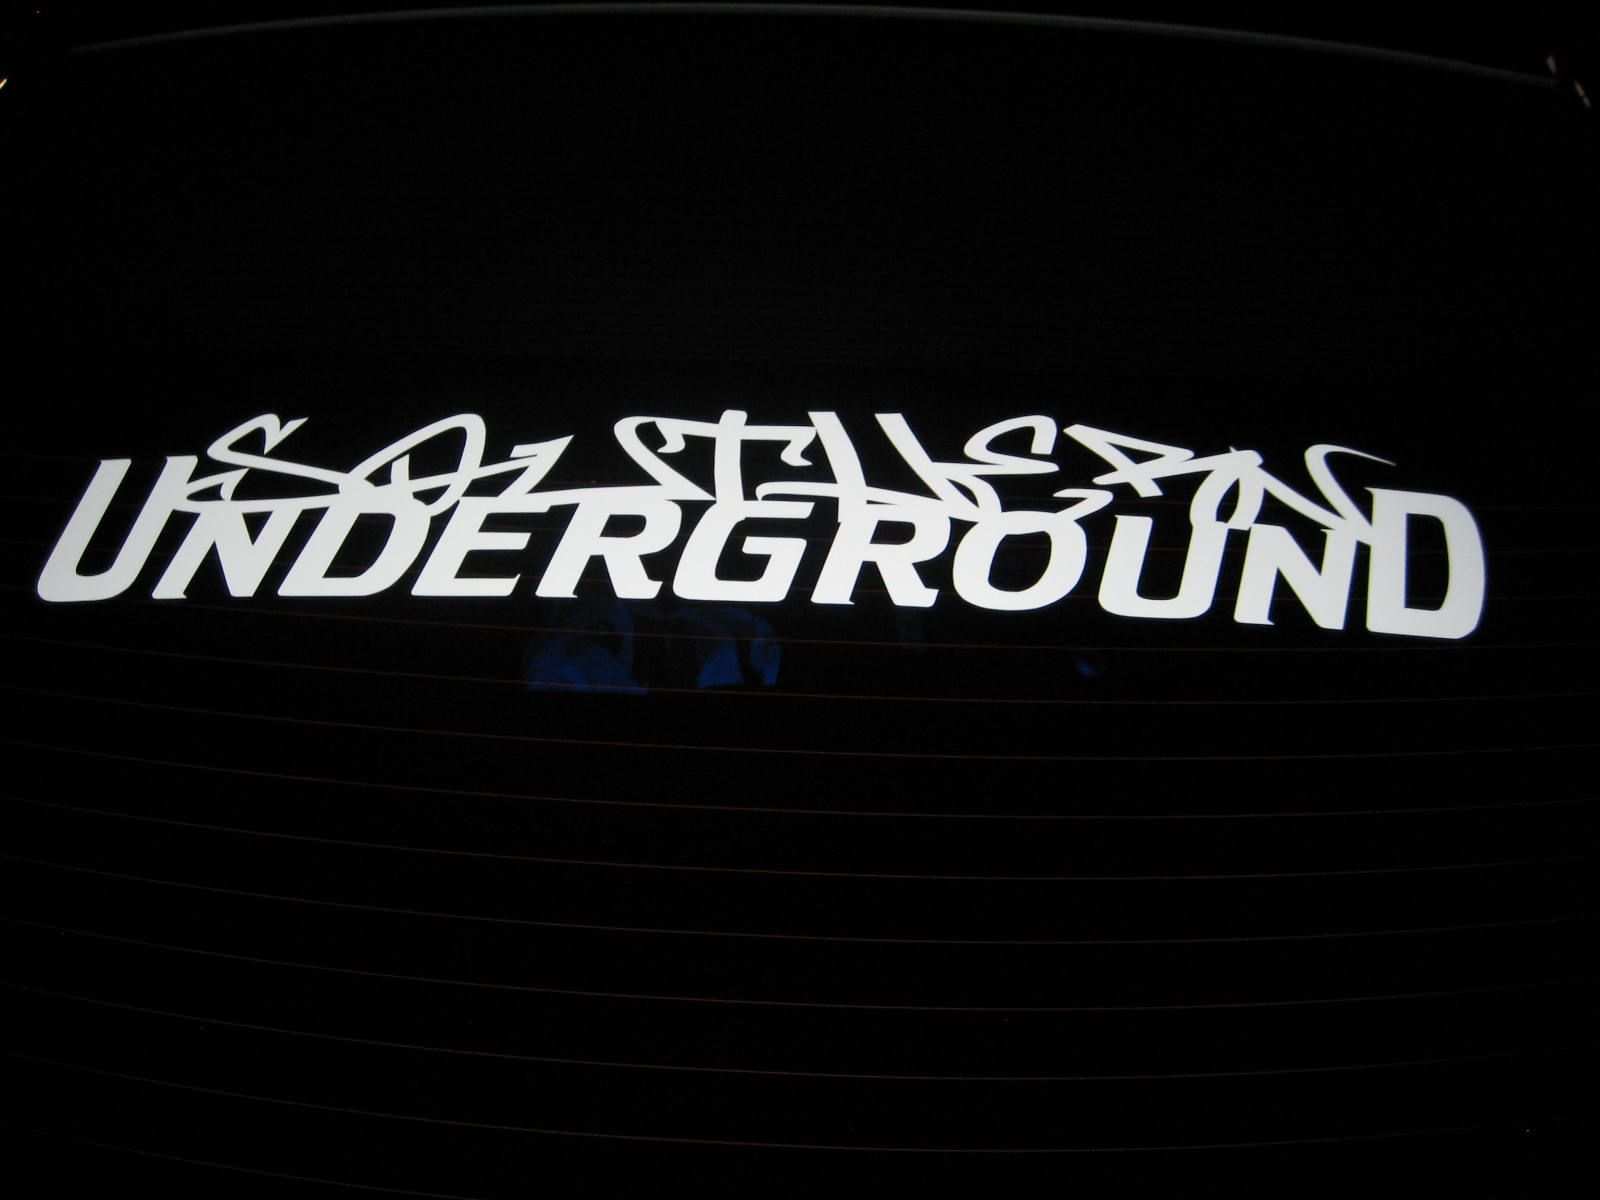 southern underground